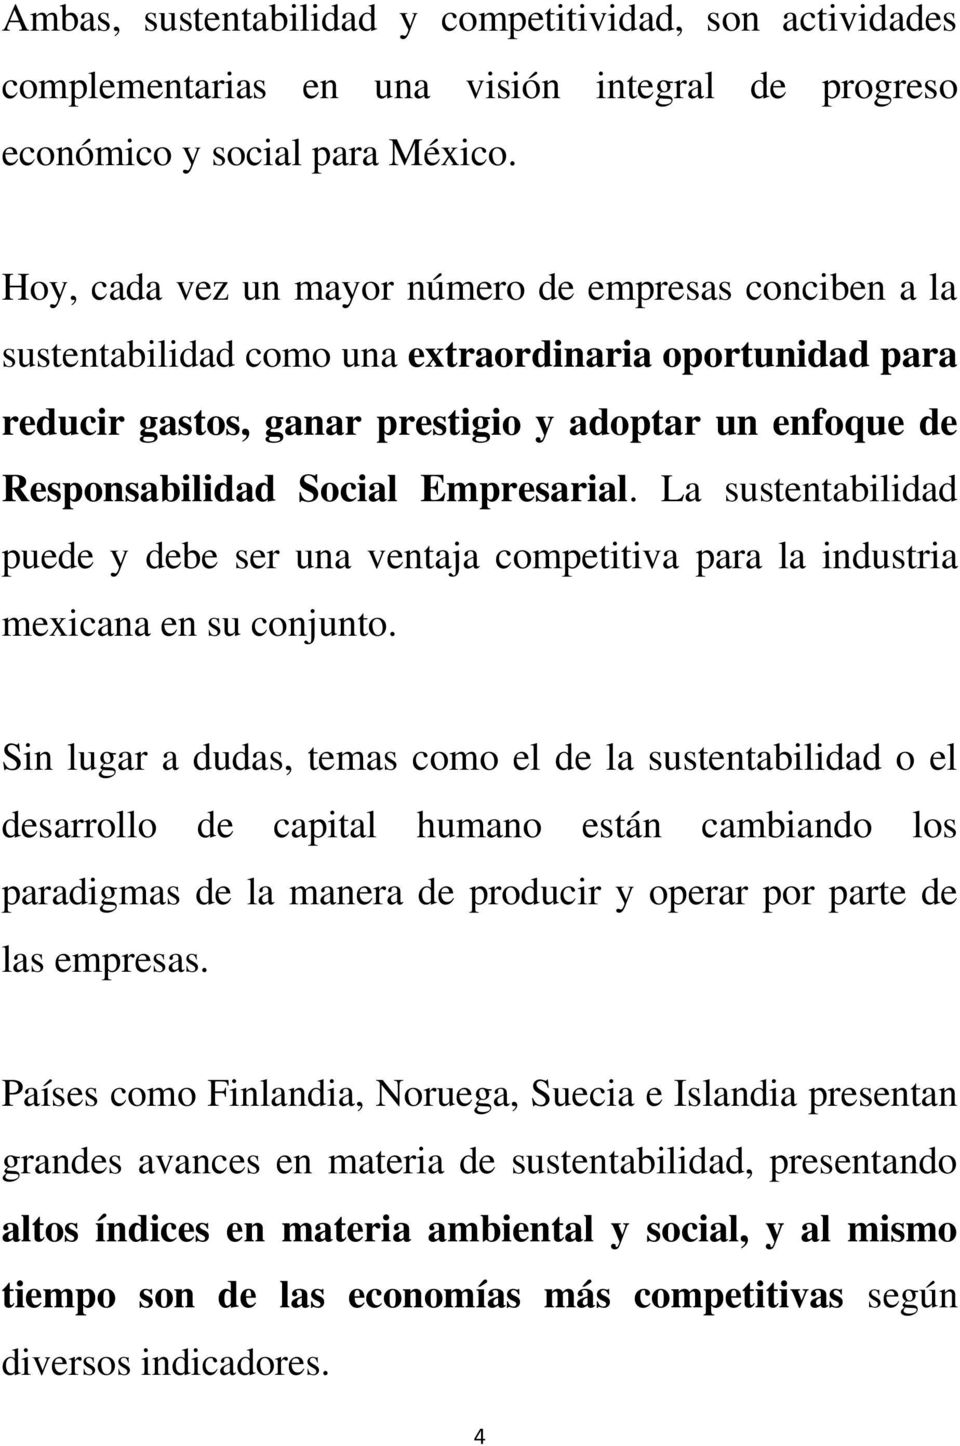 Empresarial. La sustentabilidad puede y debe ser una ventaja competitiva para la industria mexicana en su conjunto.